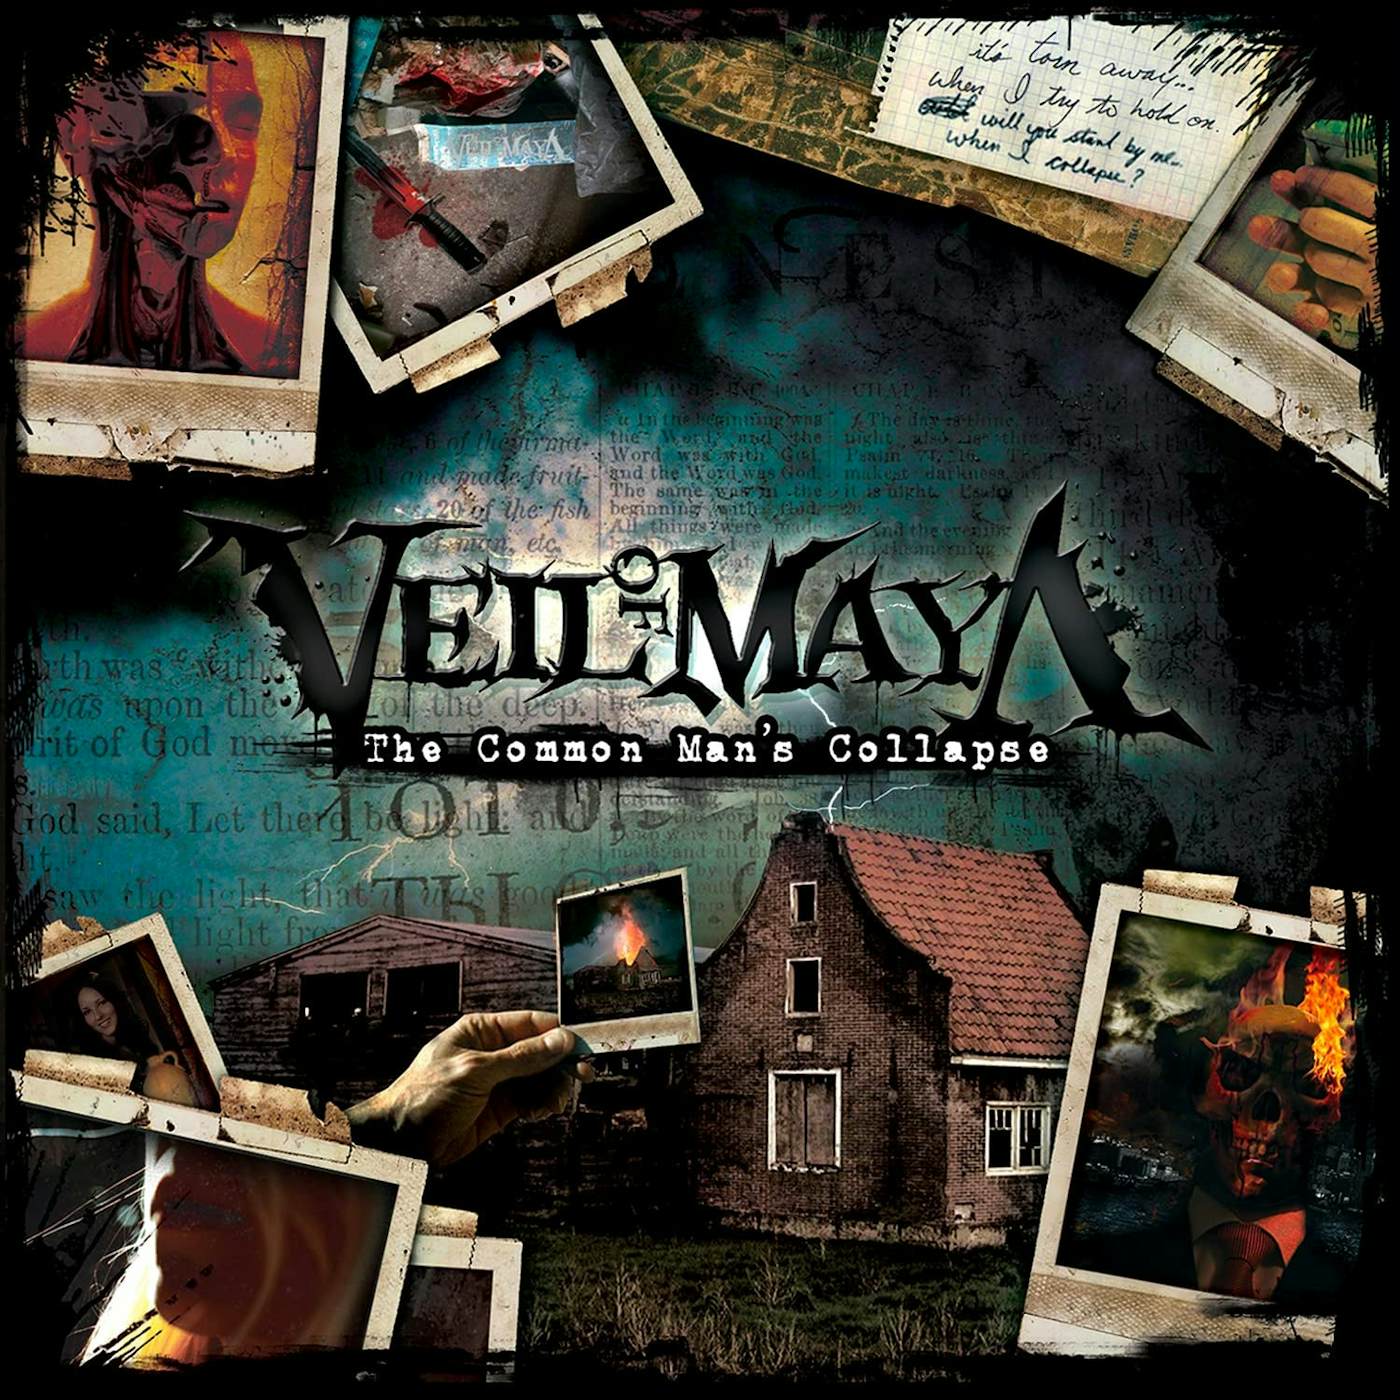 Veil Of Maya "The Common Man's Collapse" 12" (Vinyl)